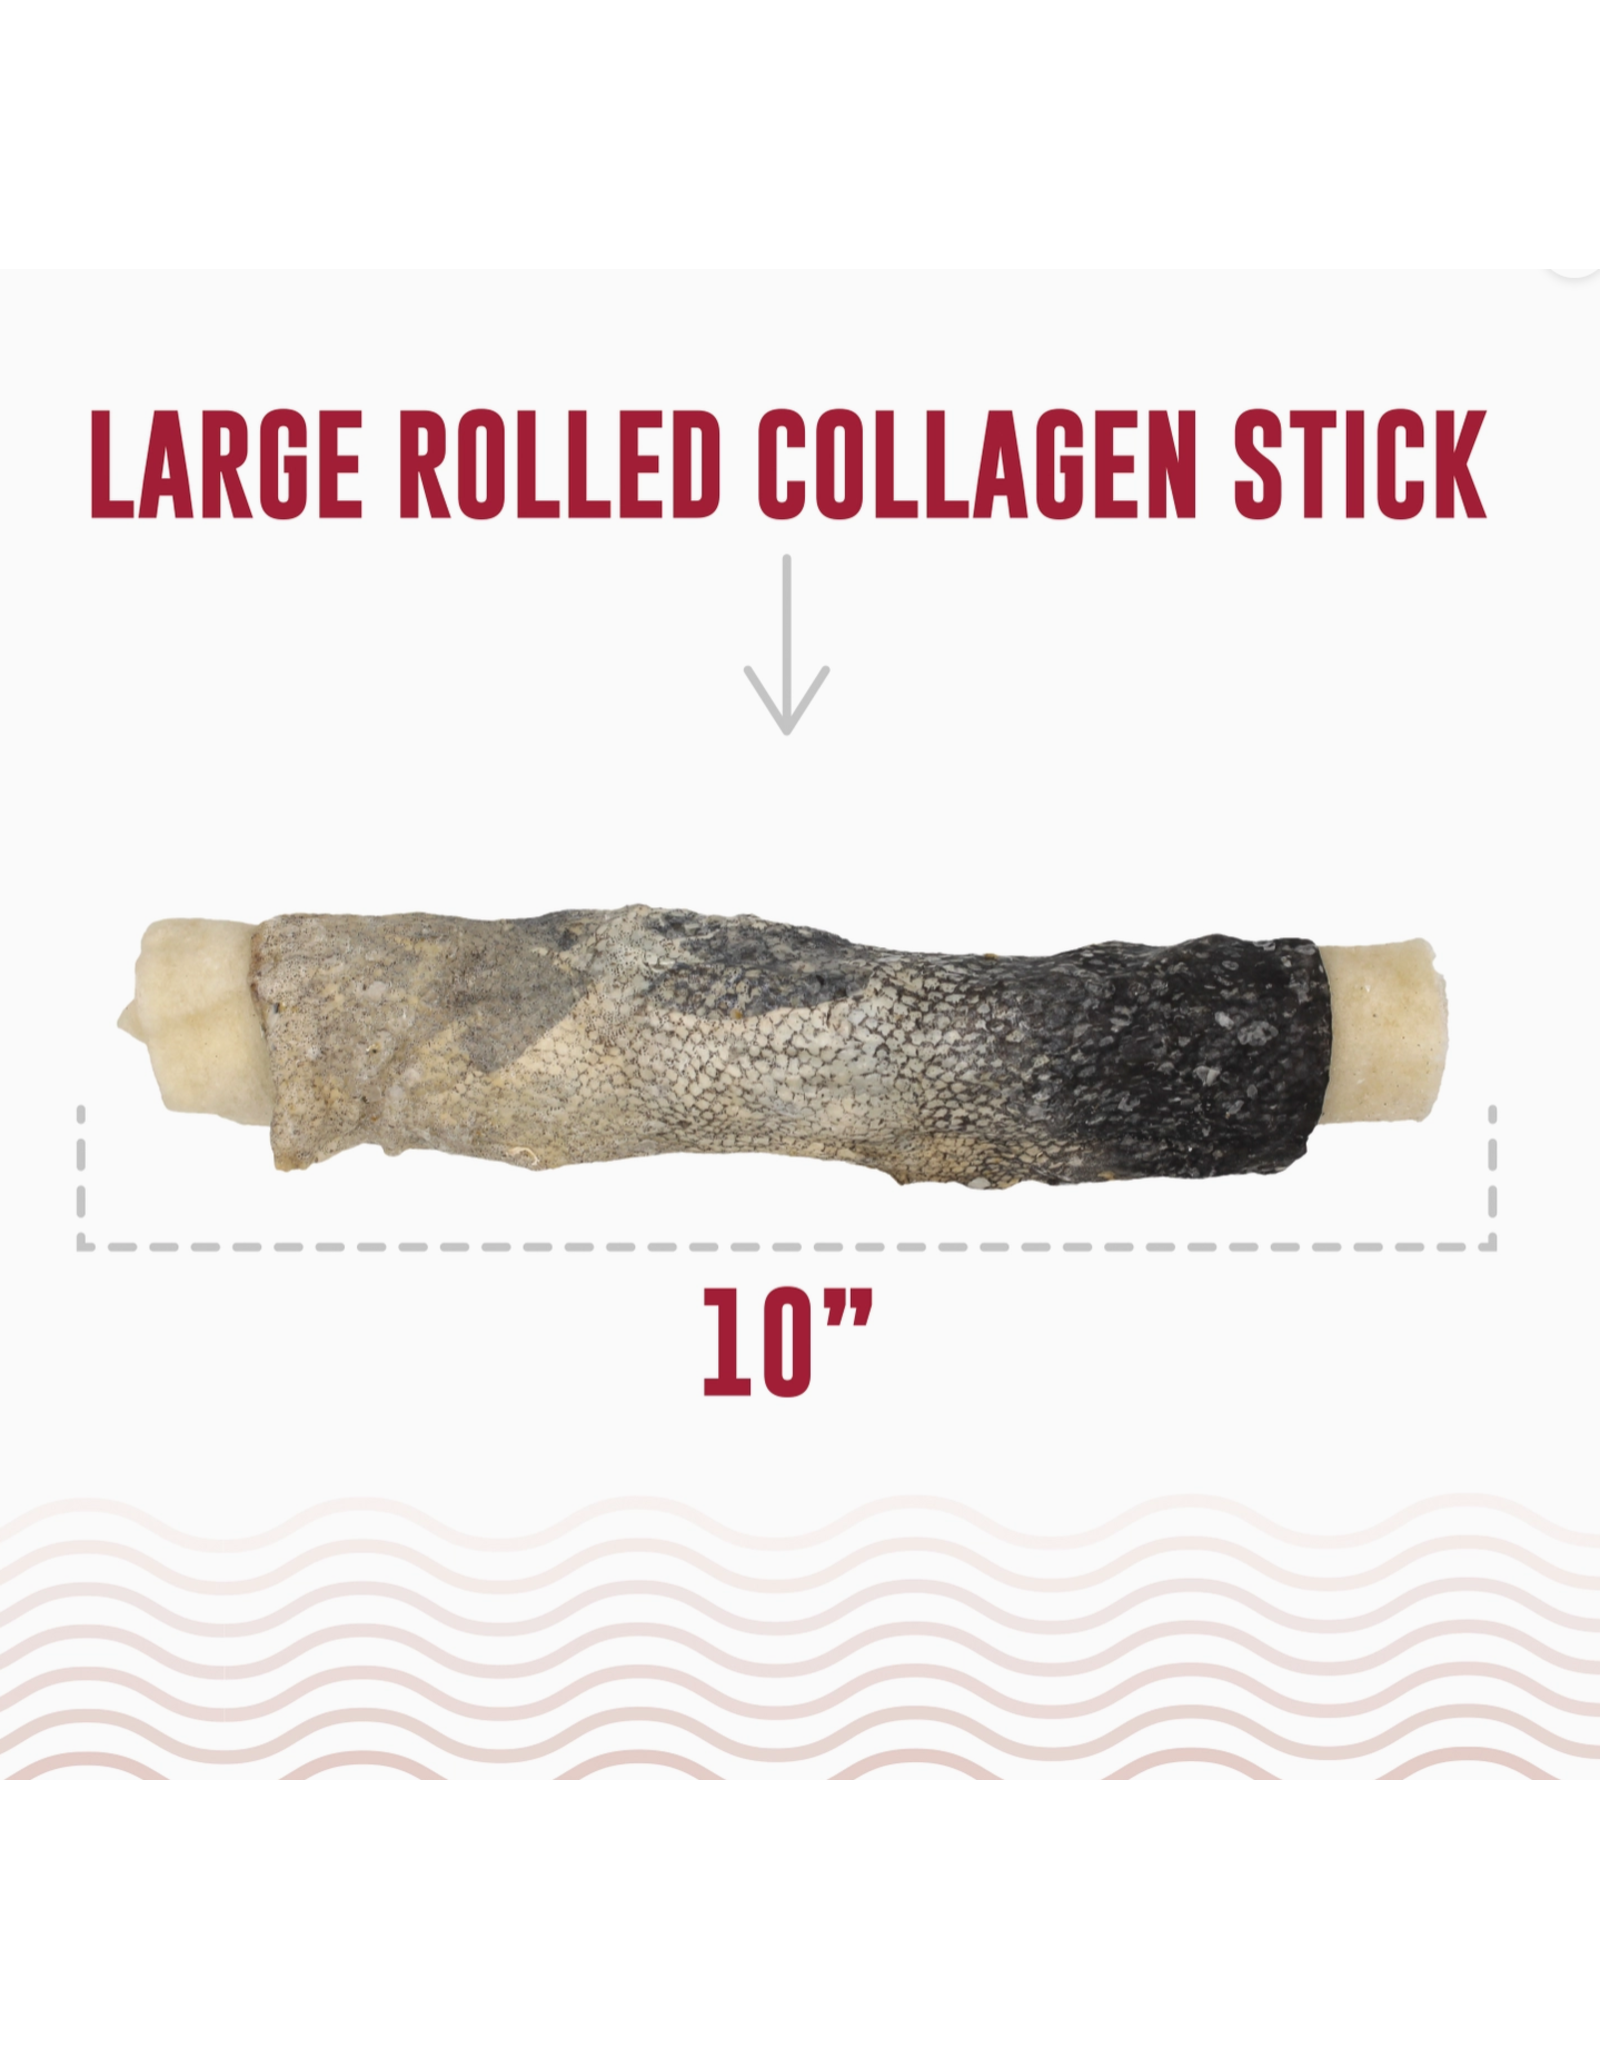 Icelandic+ Icelandic+ Beef Collagen Rolled Stick Cod Skin 8" Dog Treat